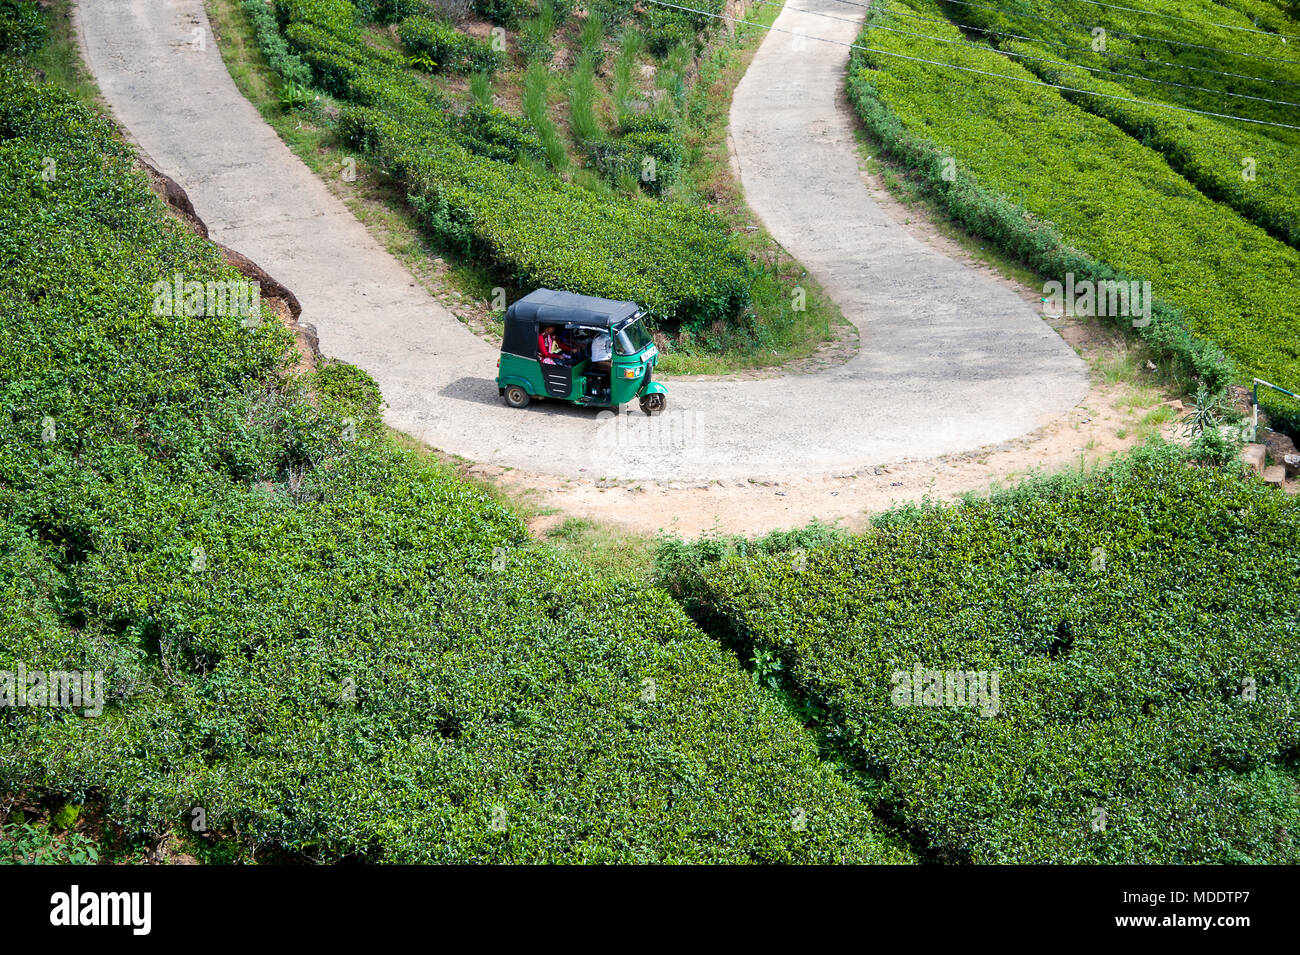 Luftaufnahme Tuktuk Taxi auf einer Teeplantage, in der Nähe von Nuwara Eliya, Sri Lanka, eine kurvenreiche Straße schlängelt sich durch eine grüne Landschaft Stockfoto